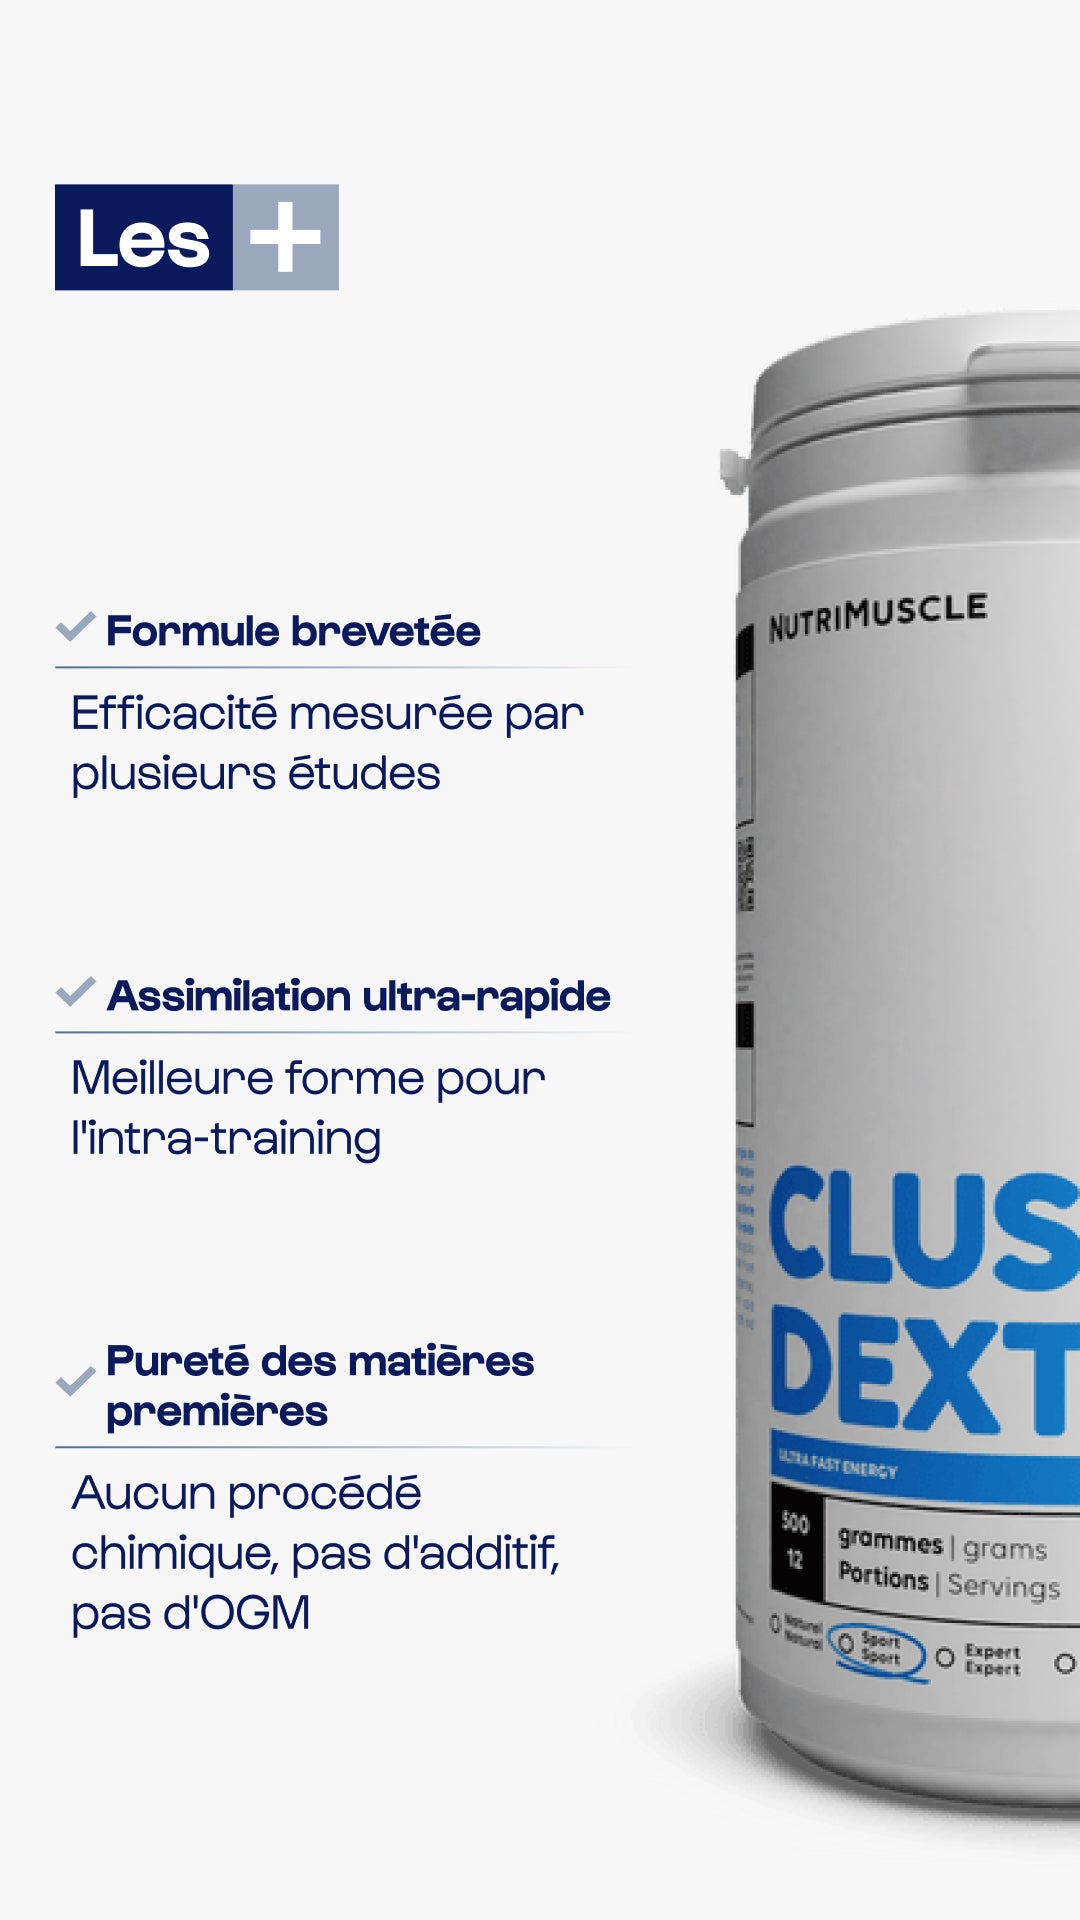 Cluster Dextrin®